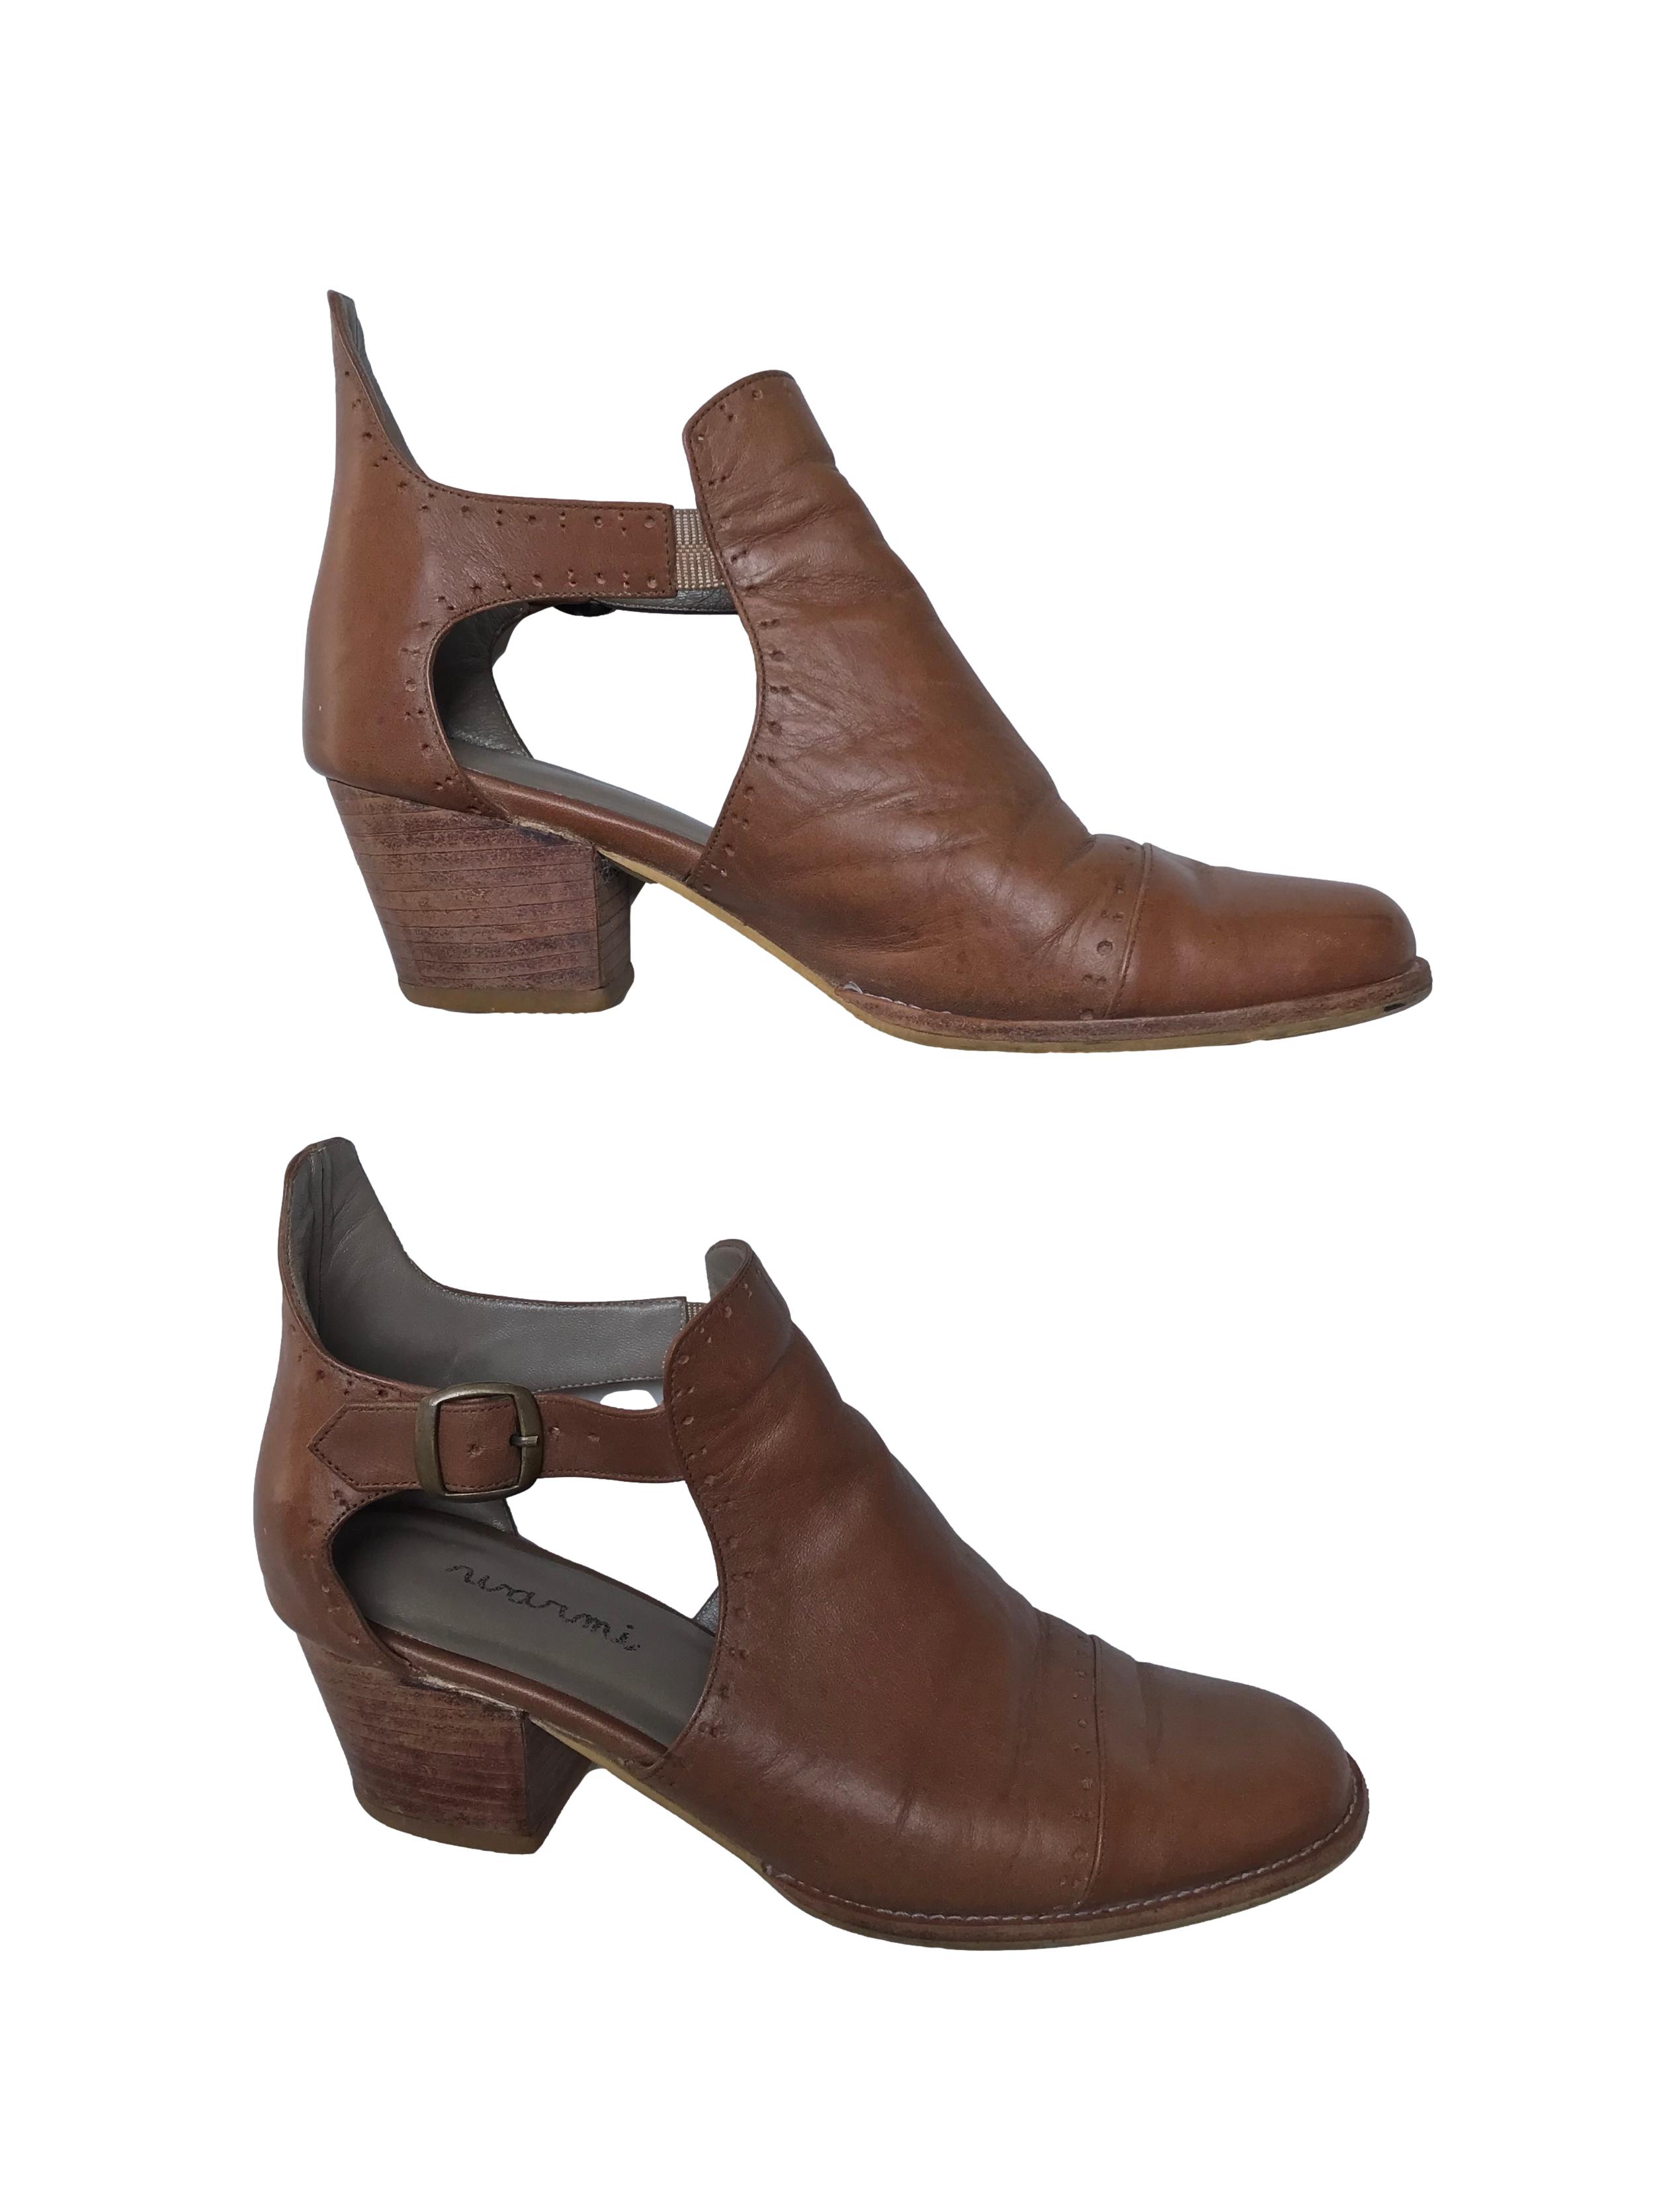 Zapatos artesanales Warmi 100% cuero, correa al tobillo, taco grueso 5cm. Tienen signos de uso pero el diseño es hermoso y el material muy duradero. Precio original estimado S/ 299